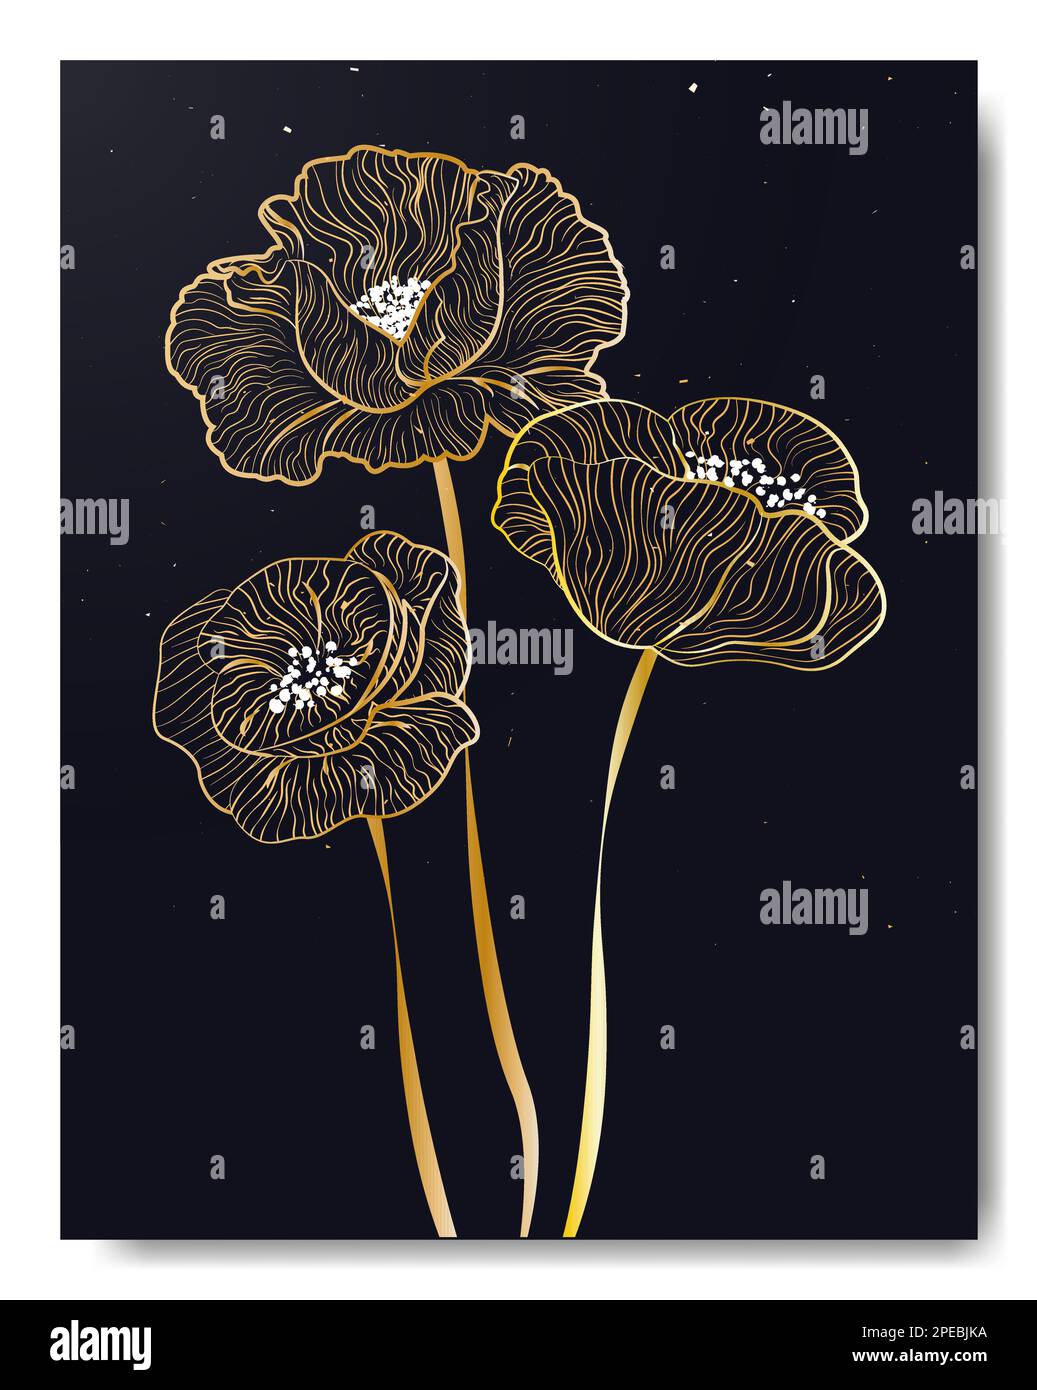 Poster alla moda con fiori di papaveri in sfumatura dorata Illustrazione Vettoriale